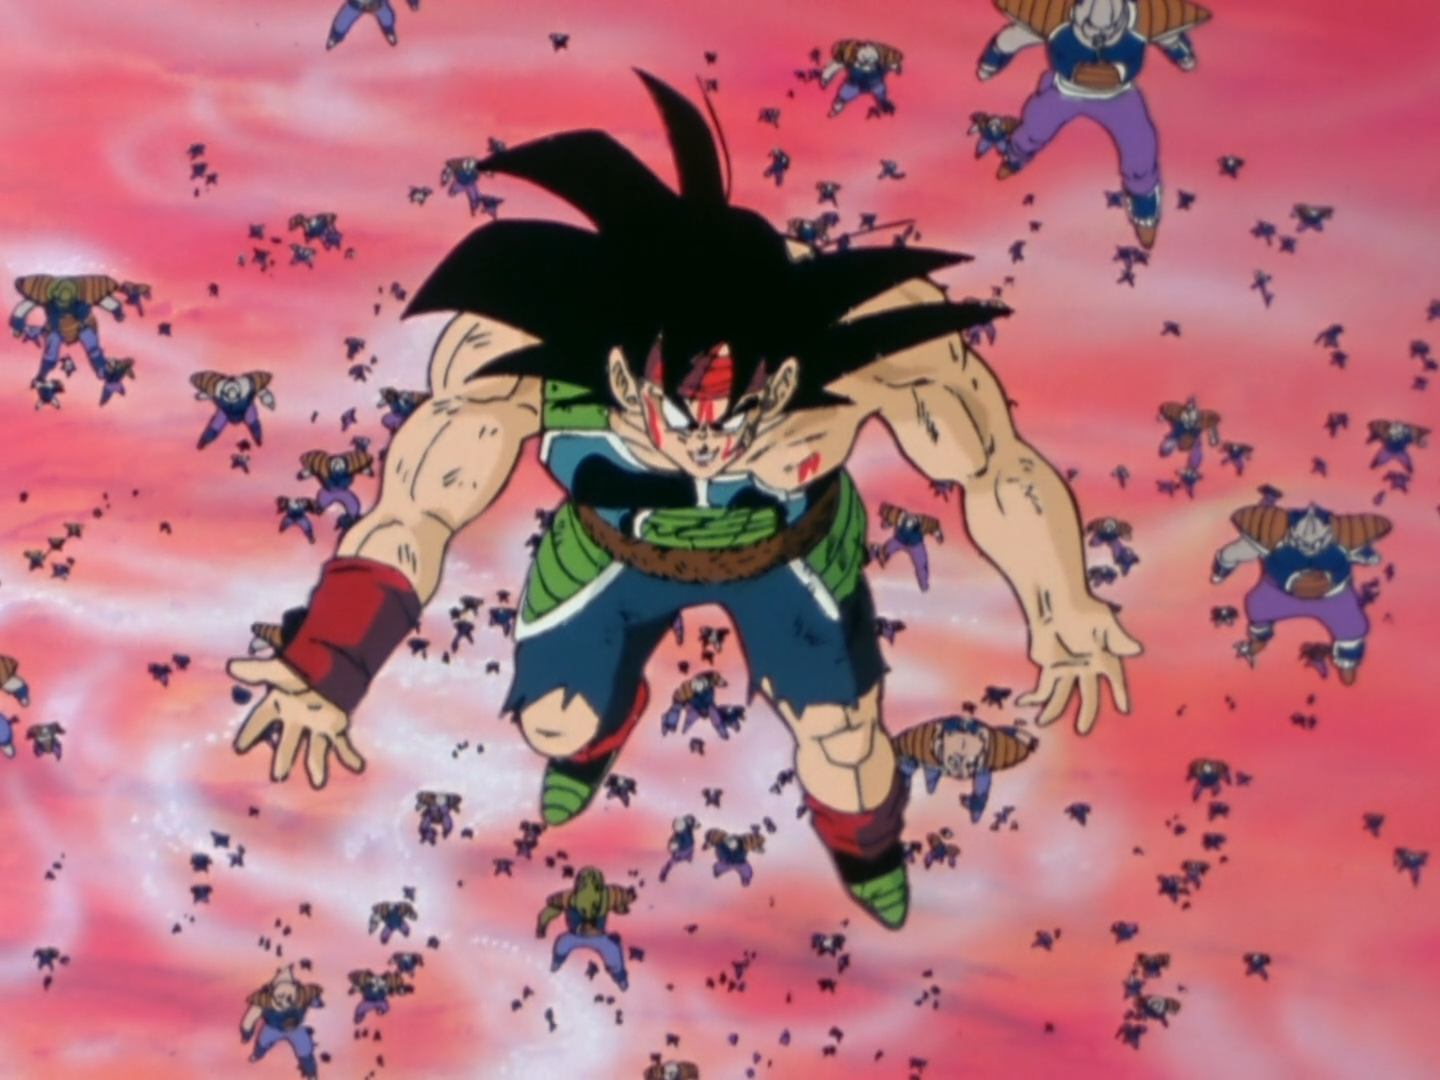 Top Dragon Ball: Top Dragon Ball Kai ep 1 - Prologue to Battle! The Return  of Son Goku by top Blogger